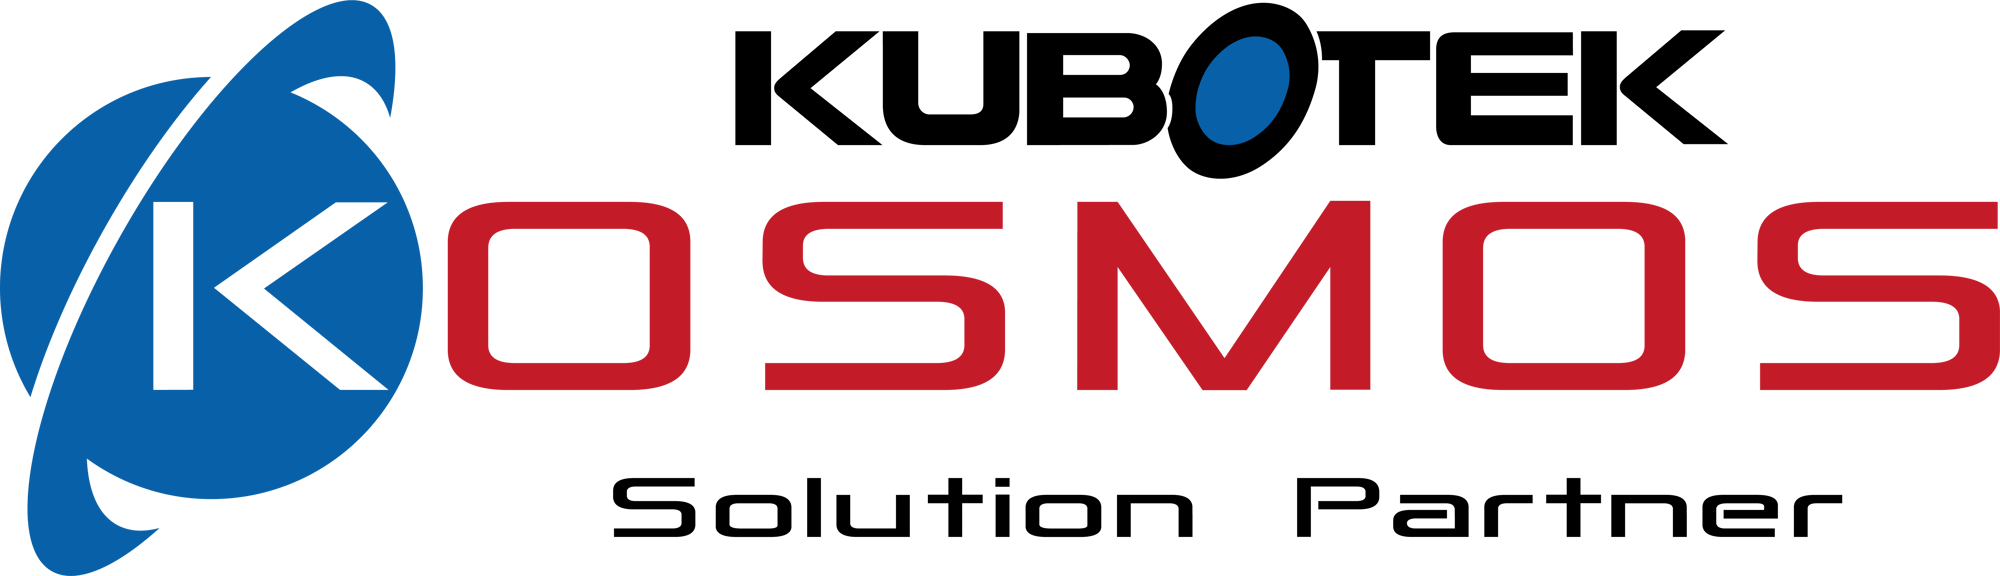 Kubotek-Kosmos-logo-partner-color